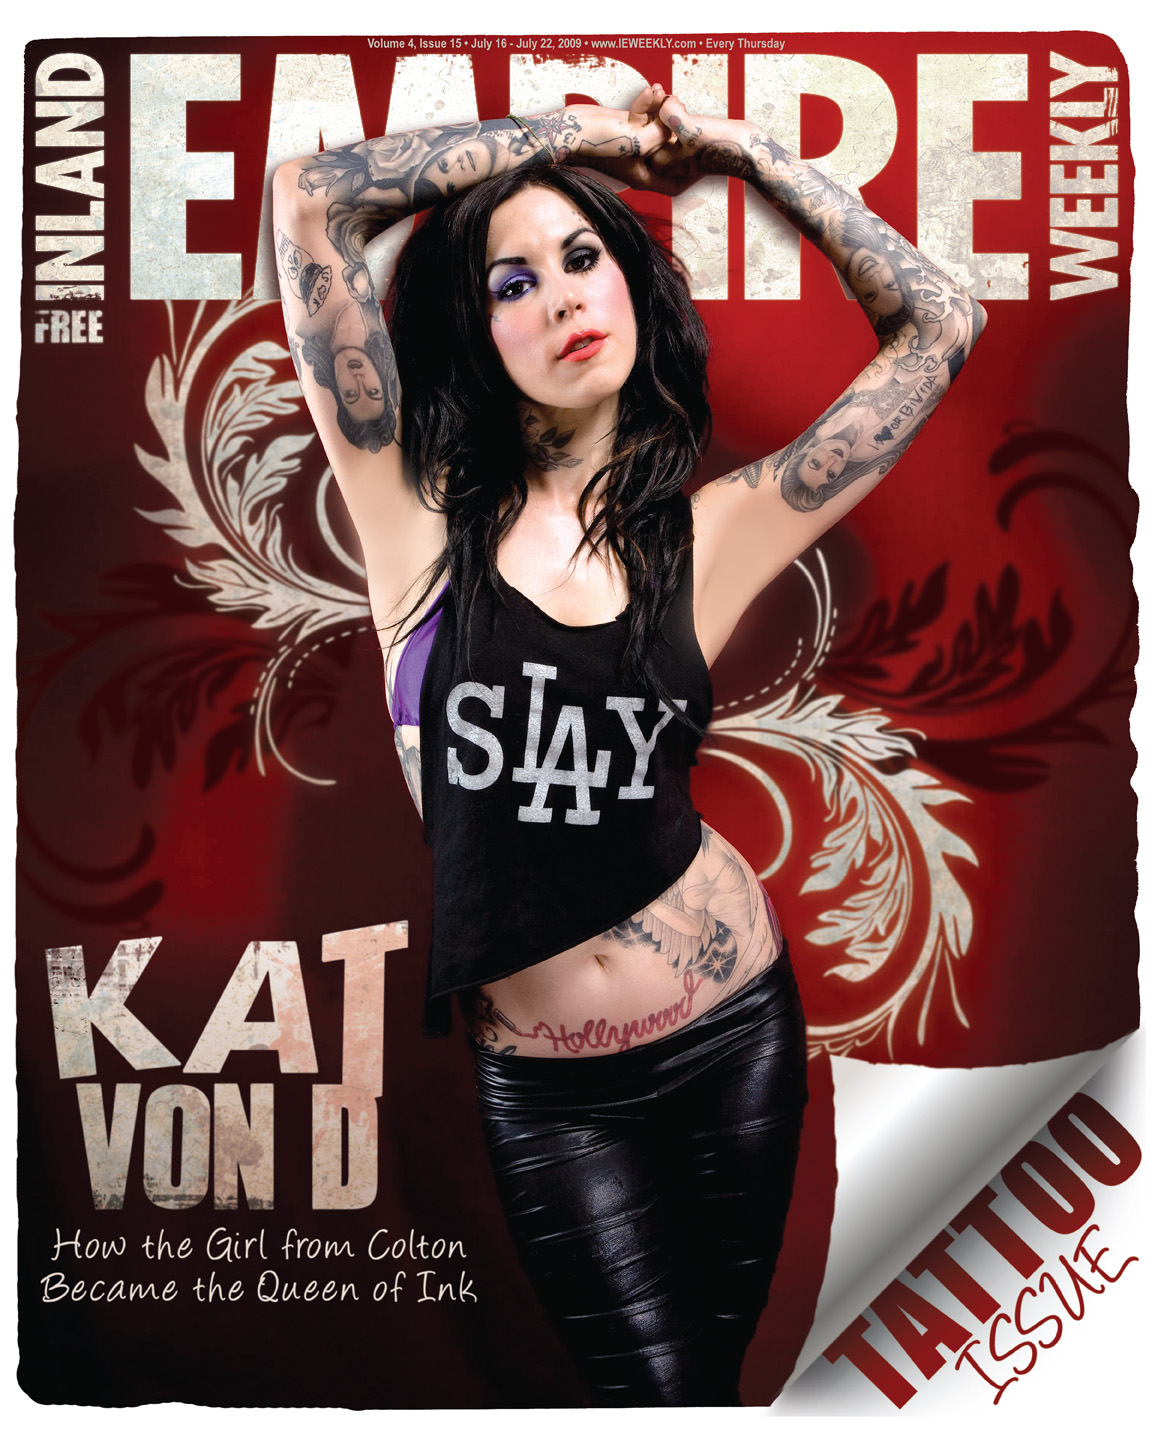 Kat Von D cover.jpg